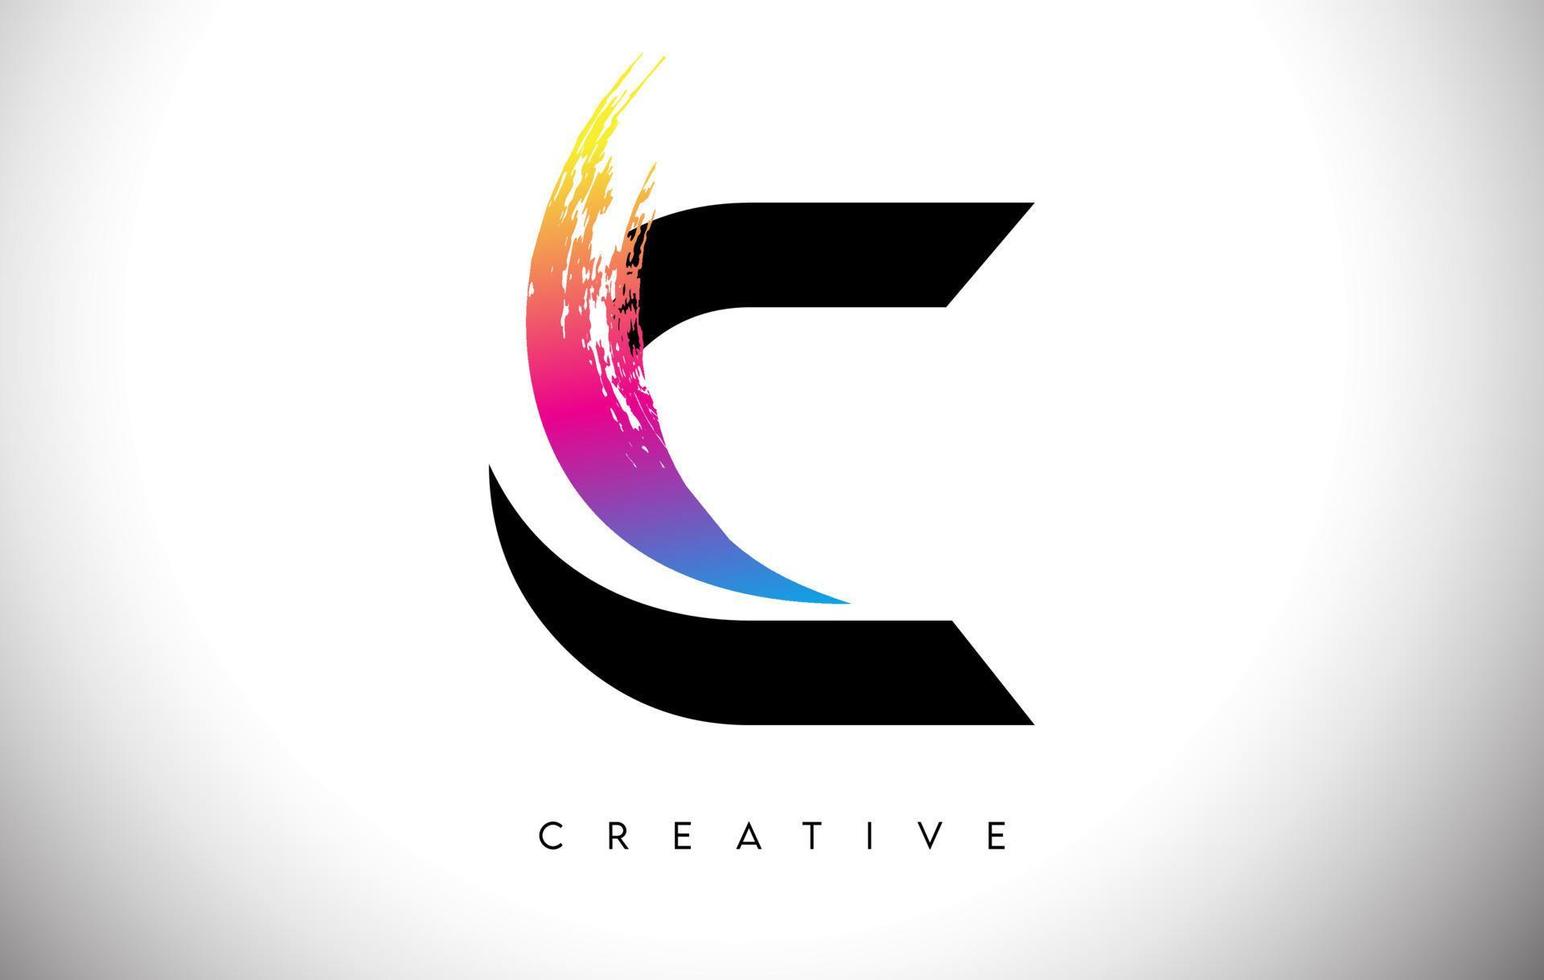 c disegno del logo della lettera artistica del tratto di pennello con un vettore creativo dall'aspetto moderno e colori vivaci